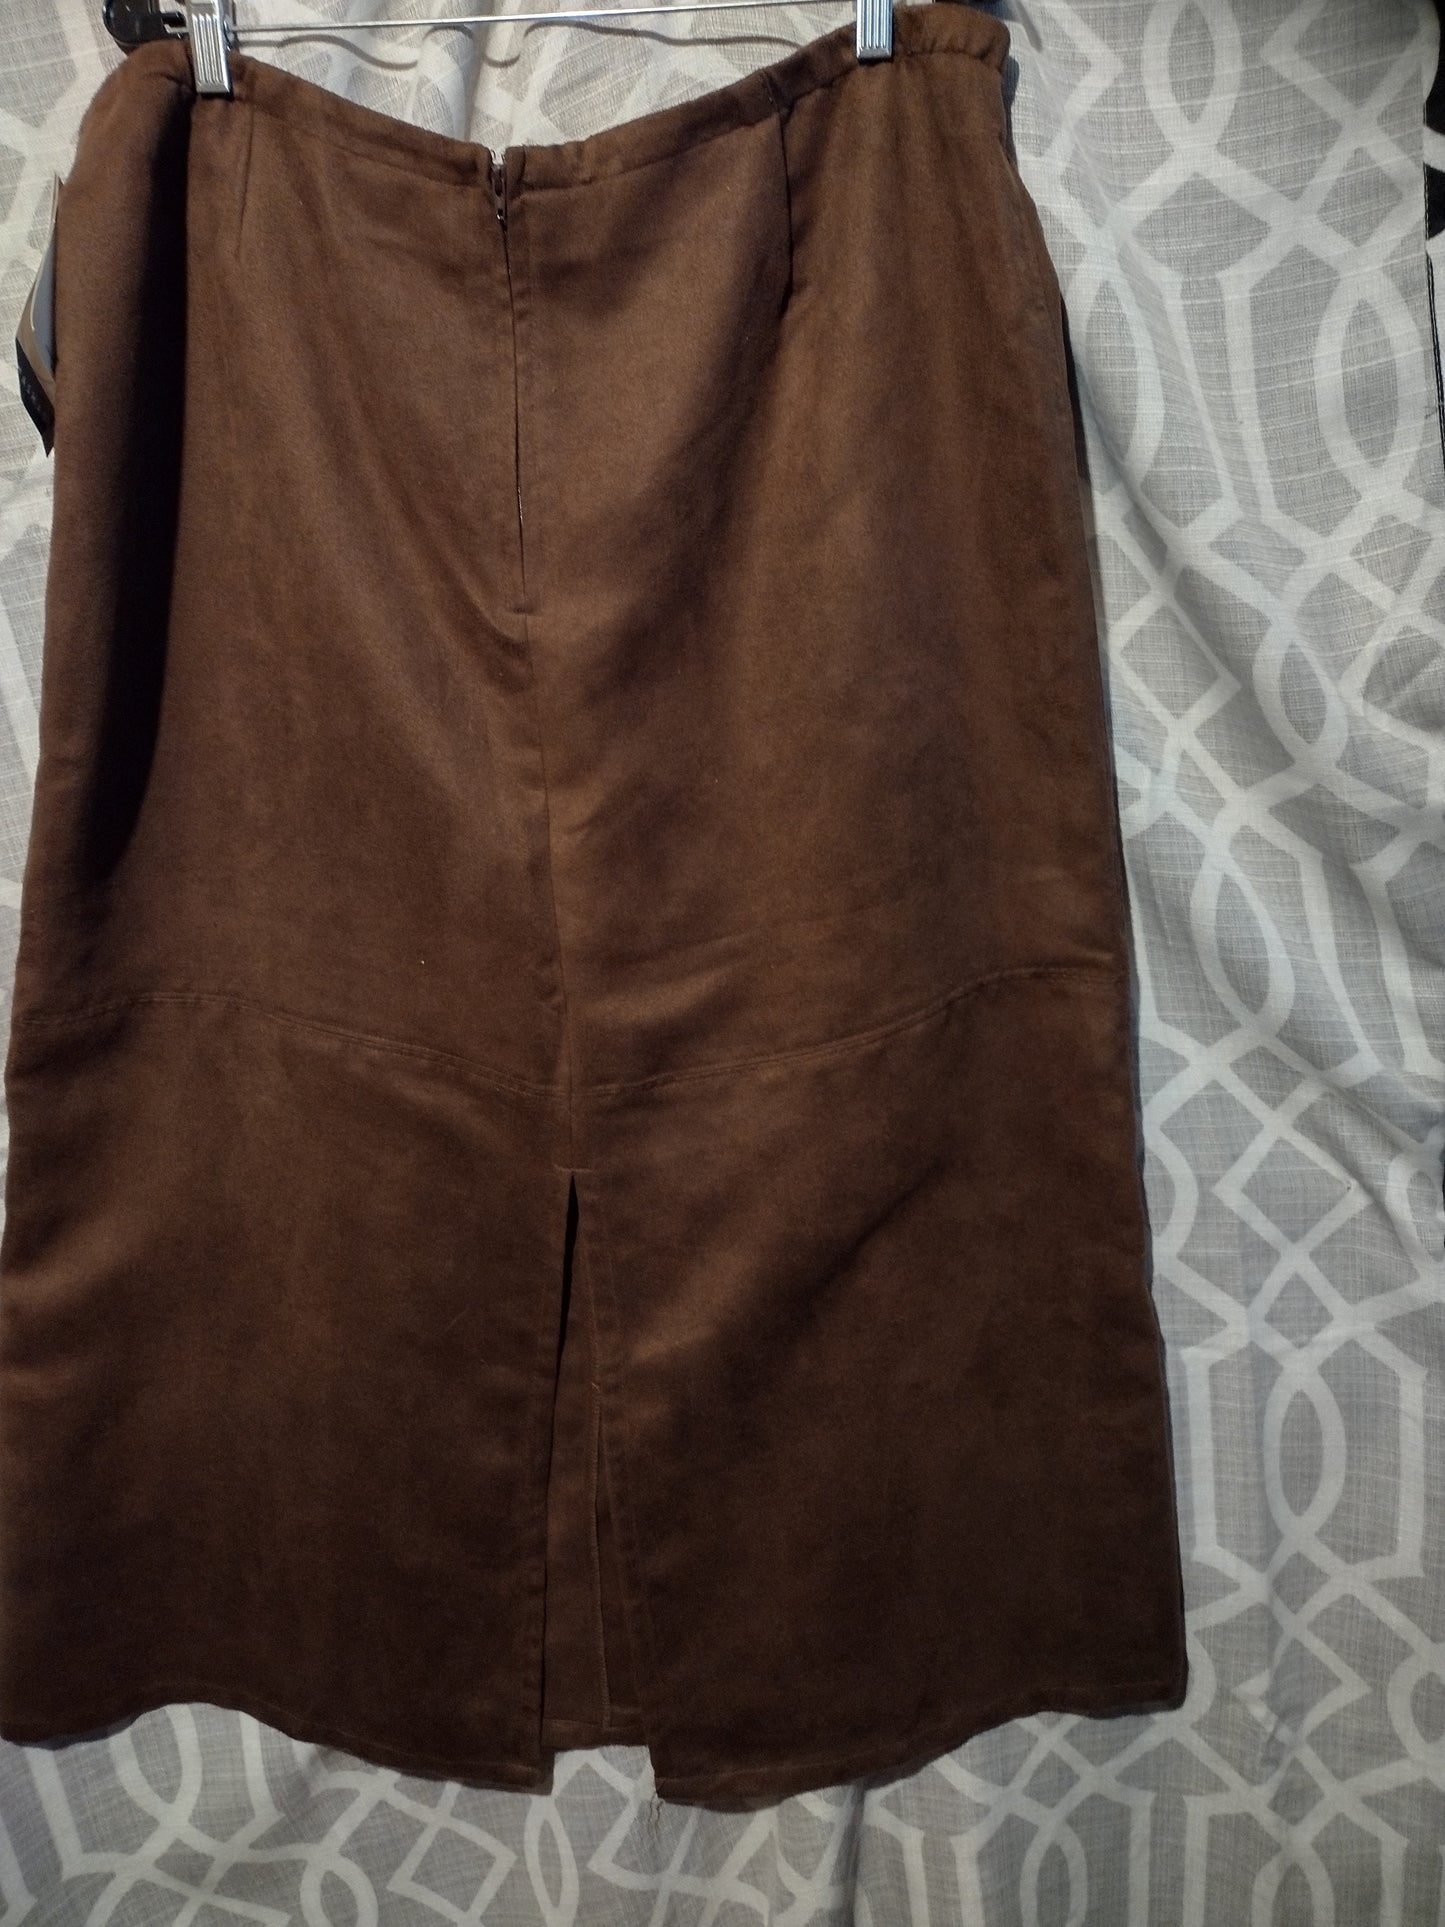 Women plus size brown skirt 16W